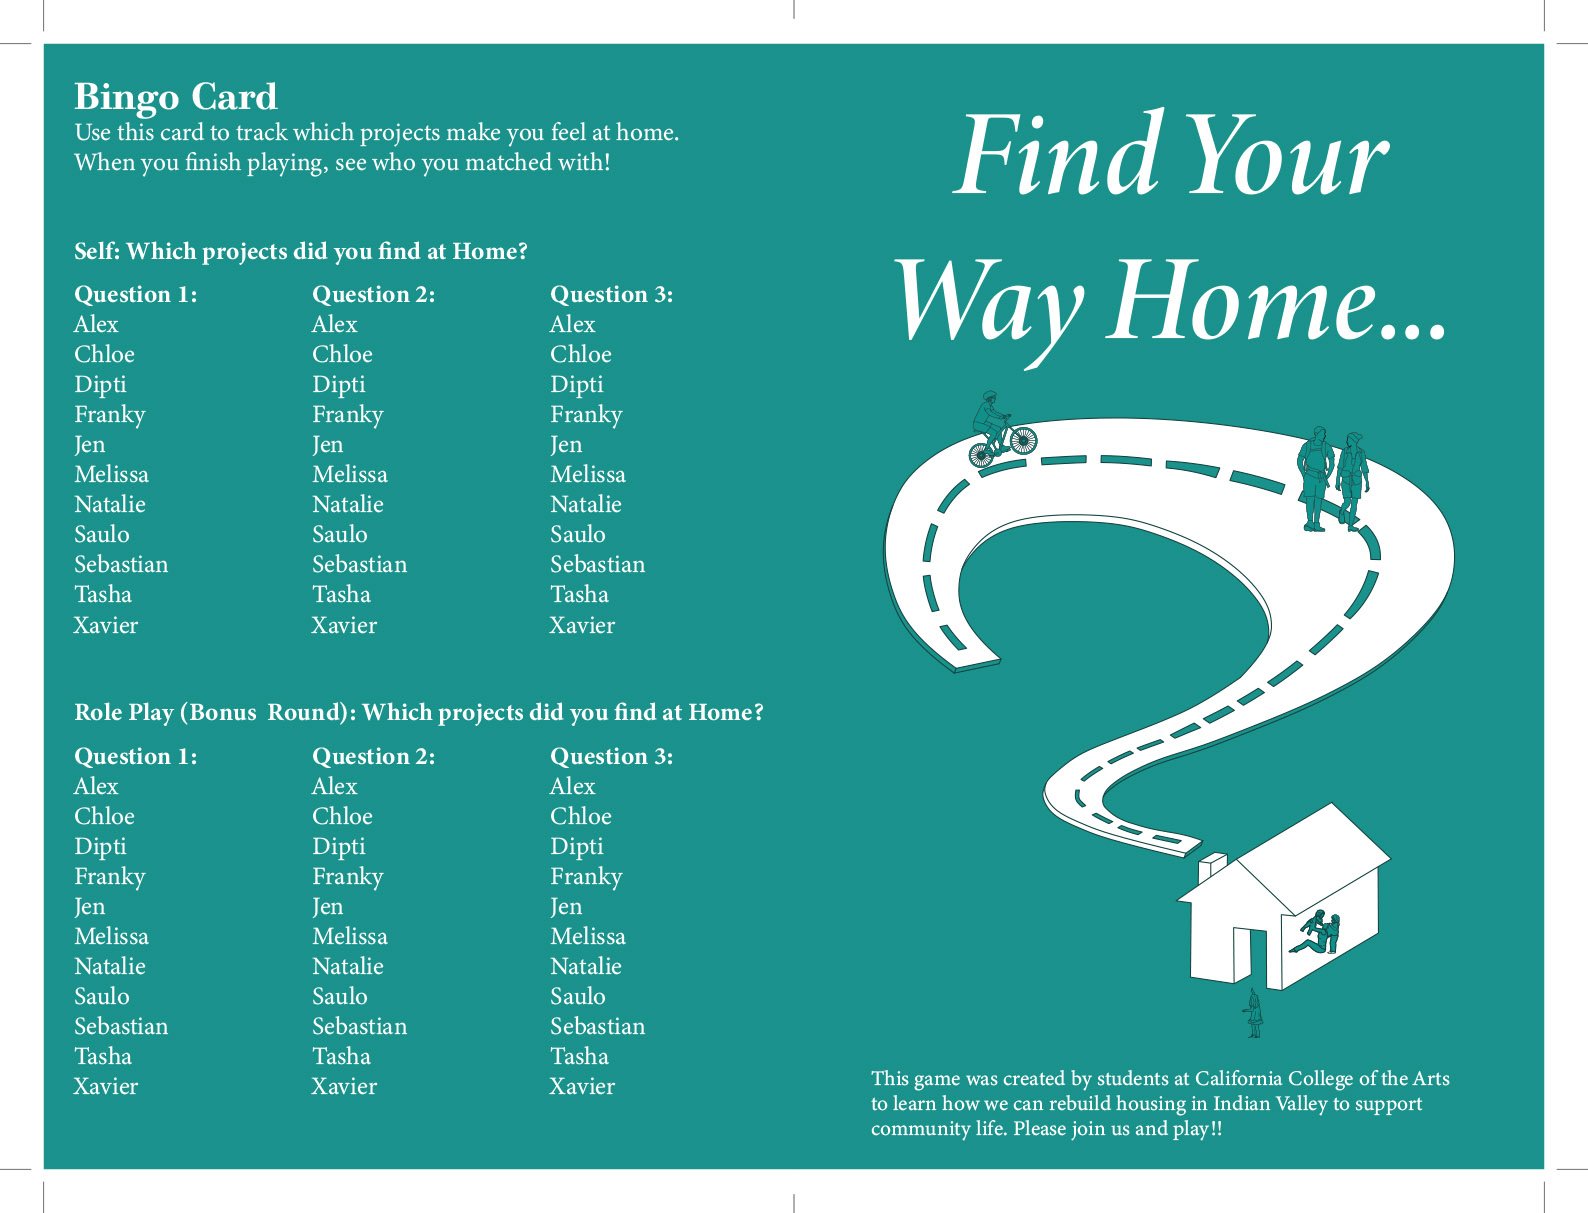 Find Your Way Home Brochure-1.jpg